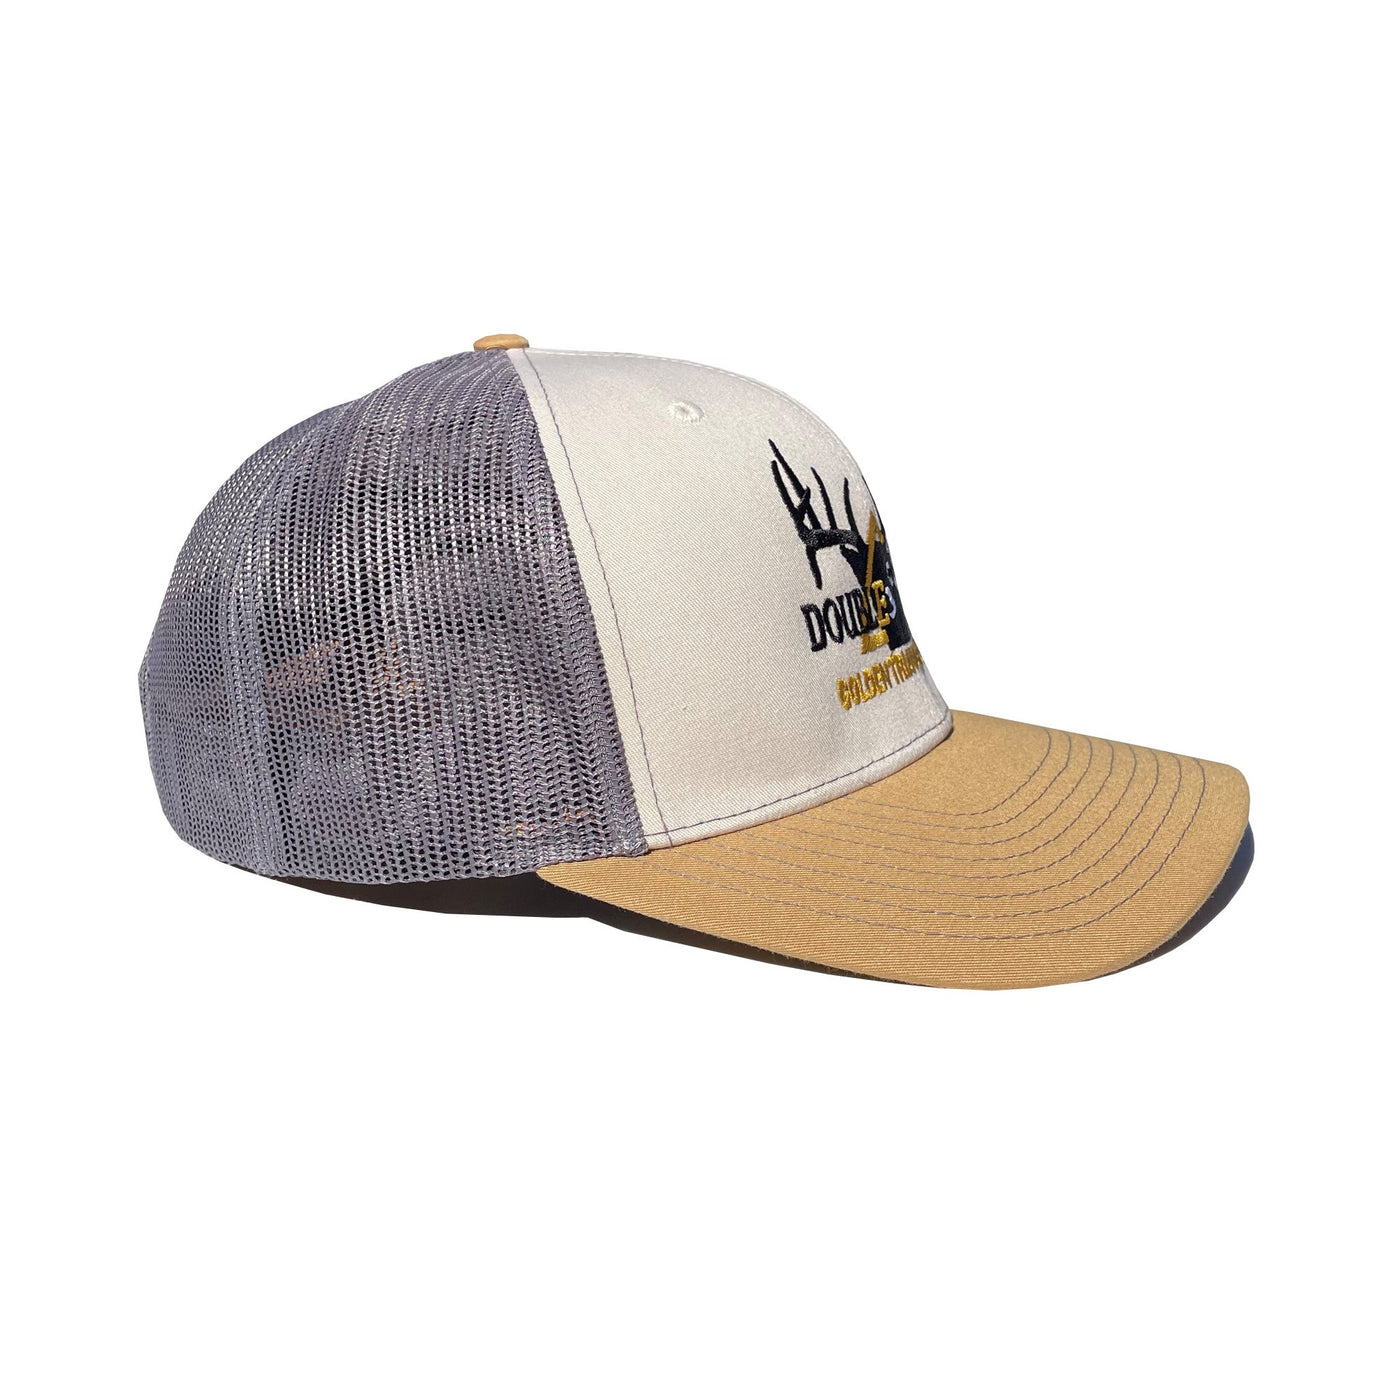 Branded Snapback Hat- Mink Beige/Charcoal/Amber Gold